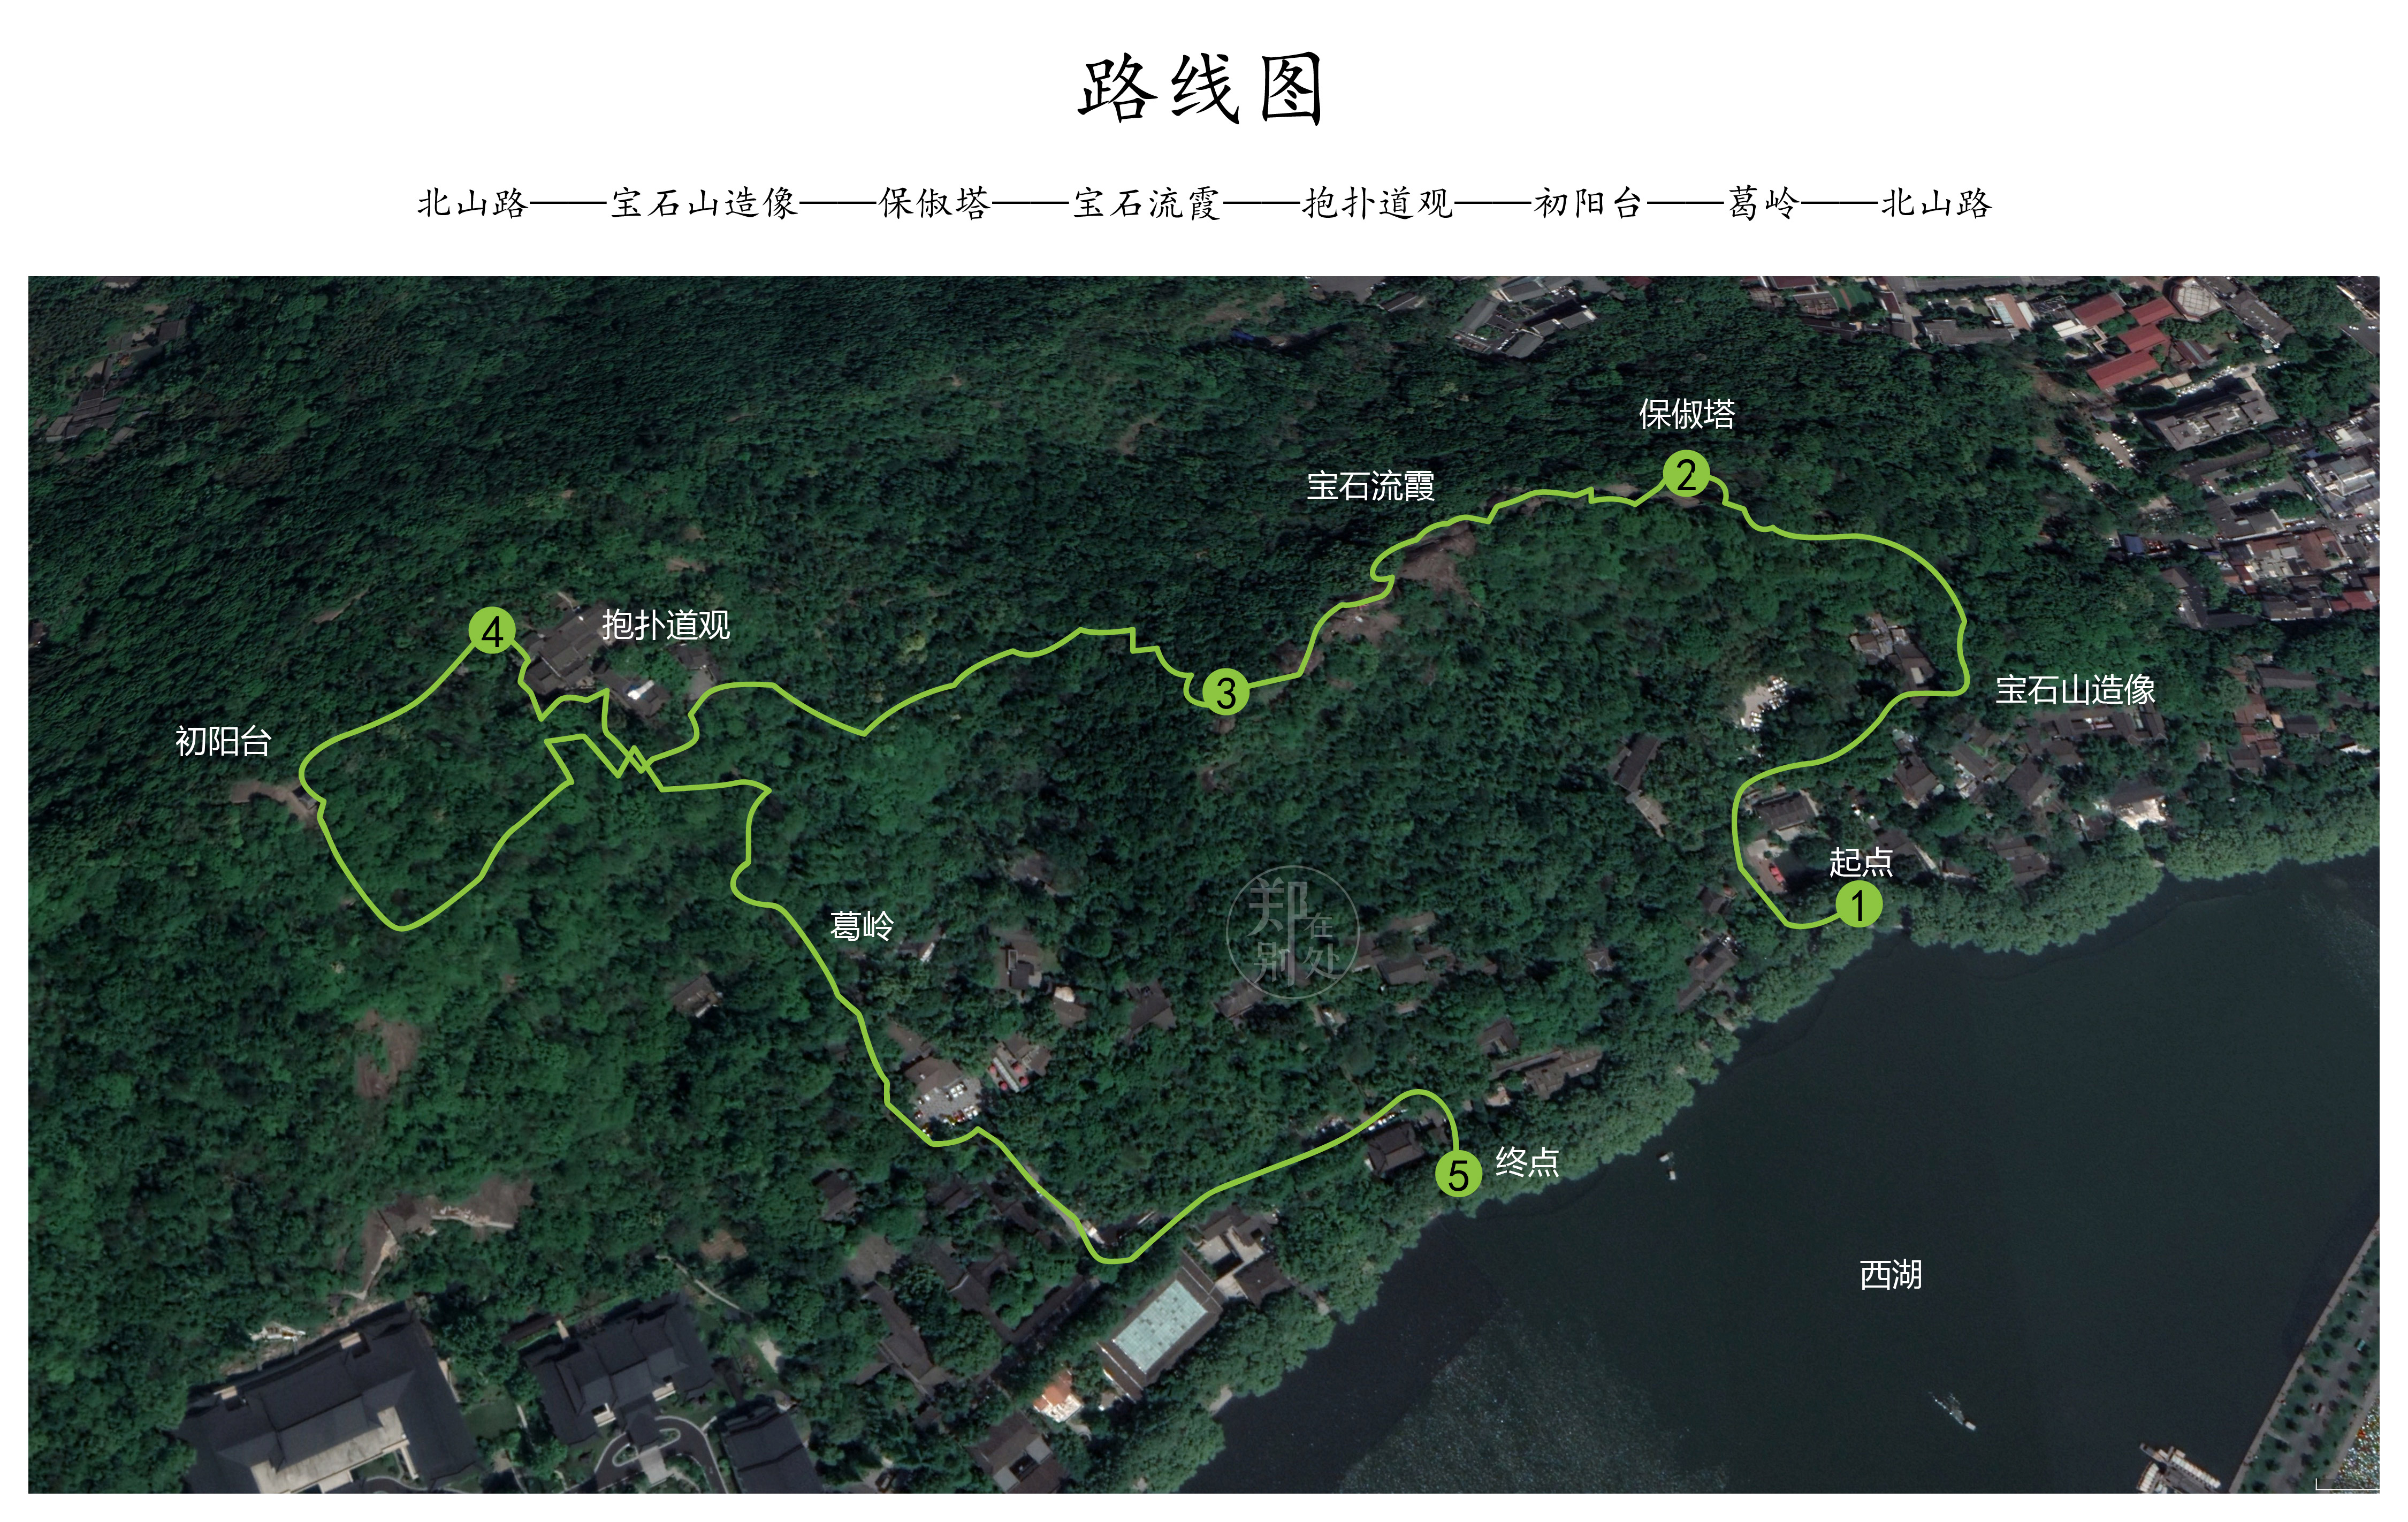 杭州登山徒步路线02:宝石山环线,堪称迷你精华路线